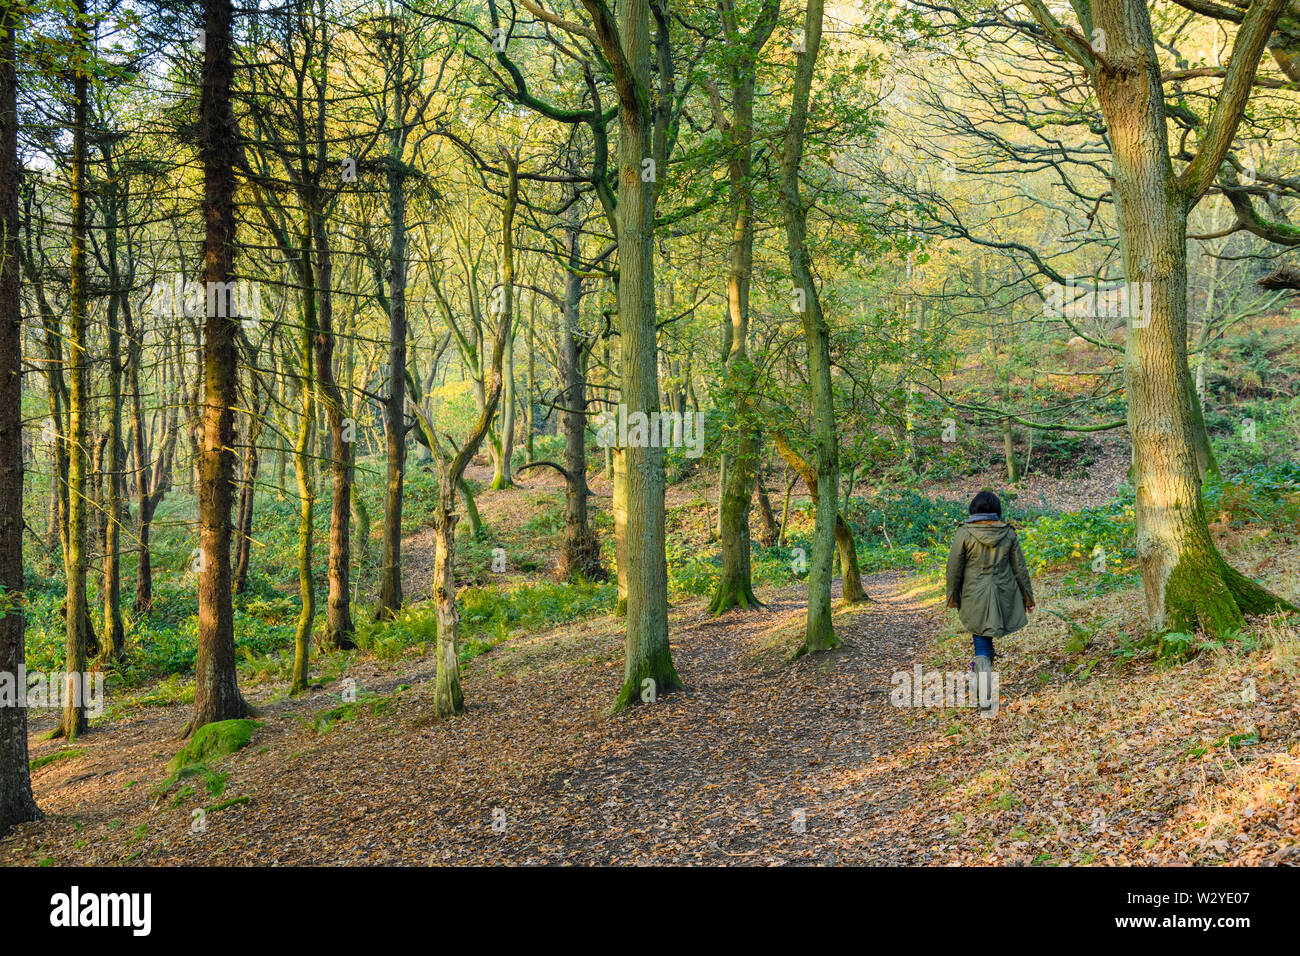 Im Herbst, Frau wandern von Bäumen in einem ruhigen malerischen sonnendurchfluteten Wäldern, im Laub - Middleton Woods, Ilkley, West Yorkshire, England, UK. Stockfoto